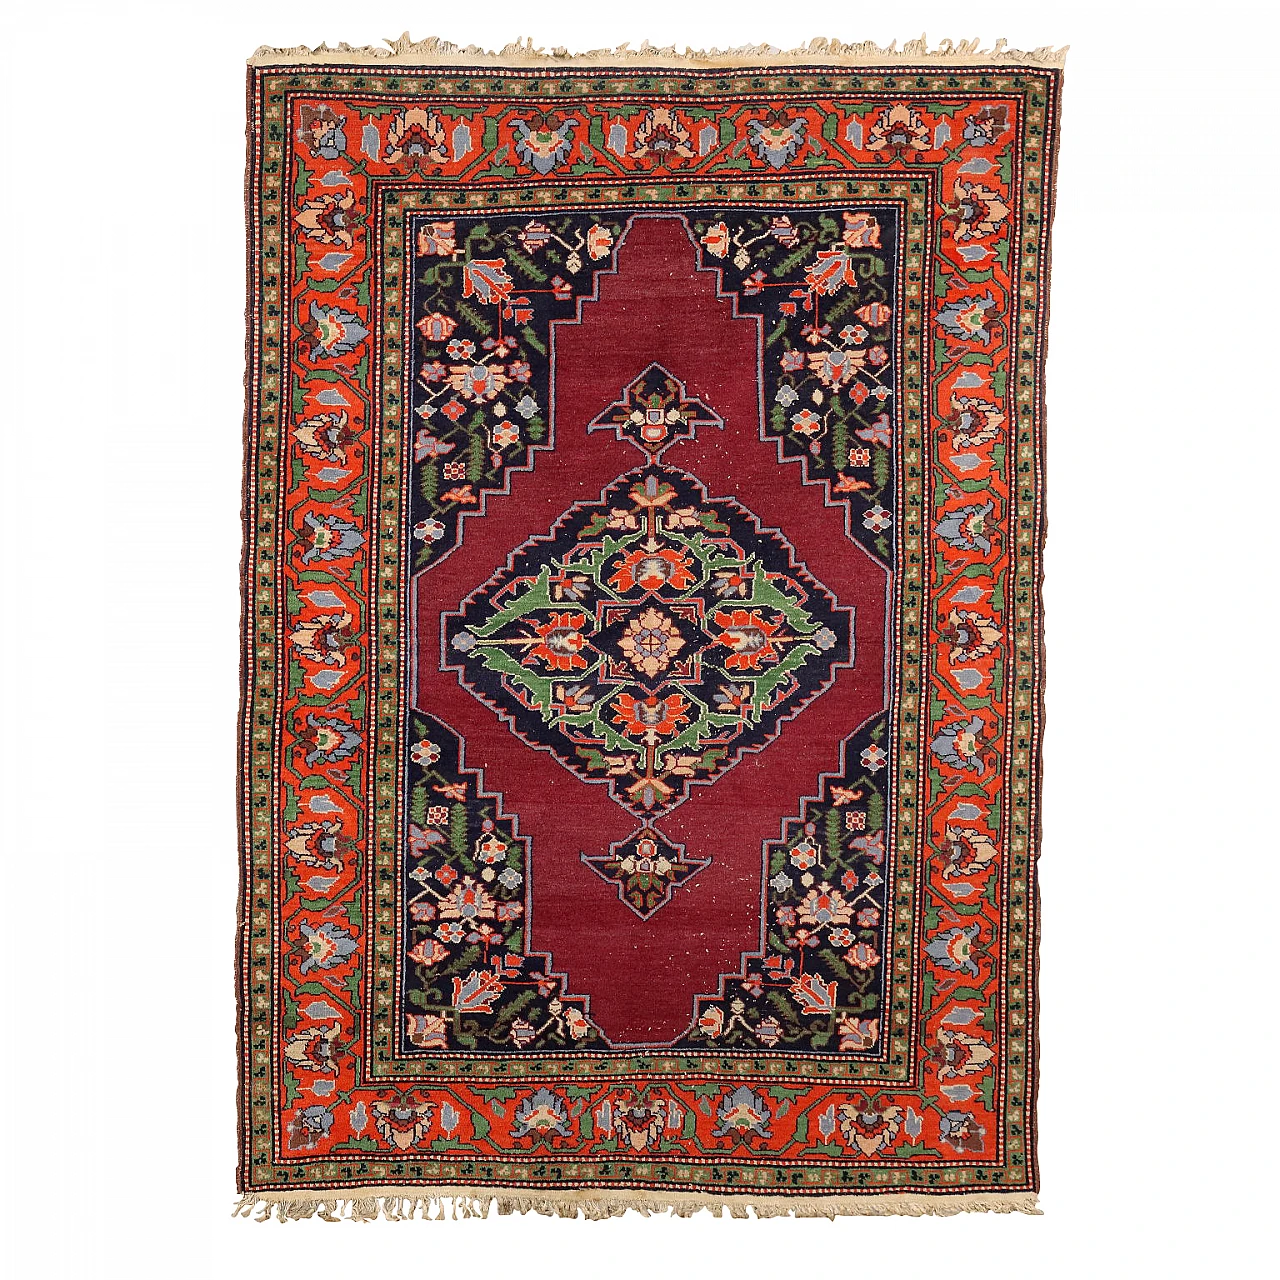 Malayer Iranian cotton and wool carpet 1